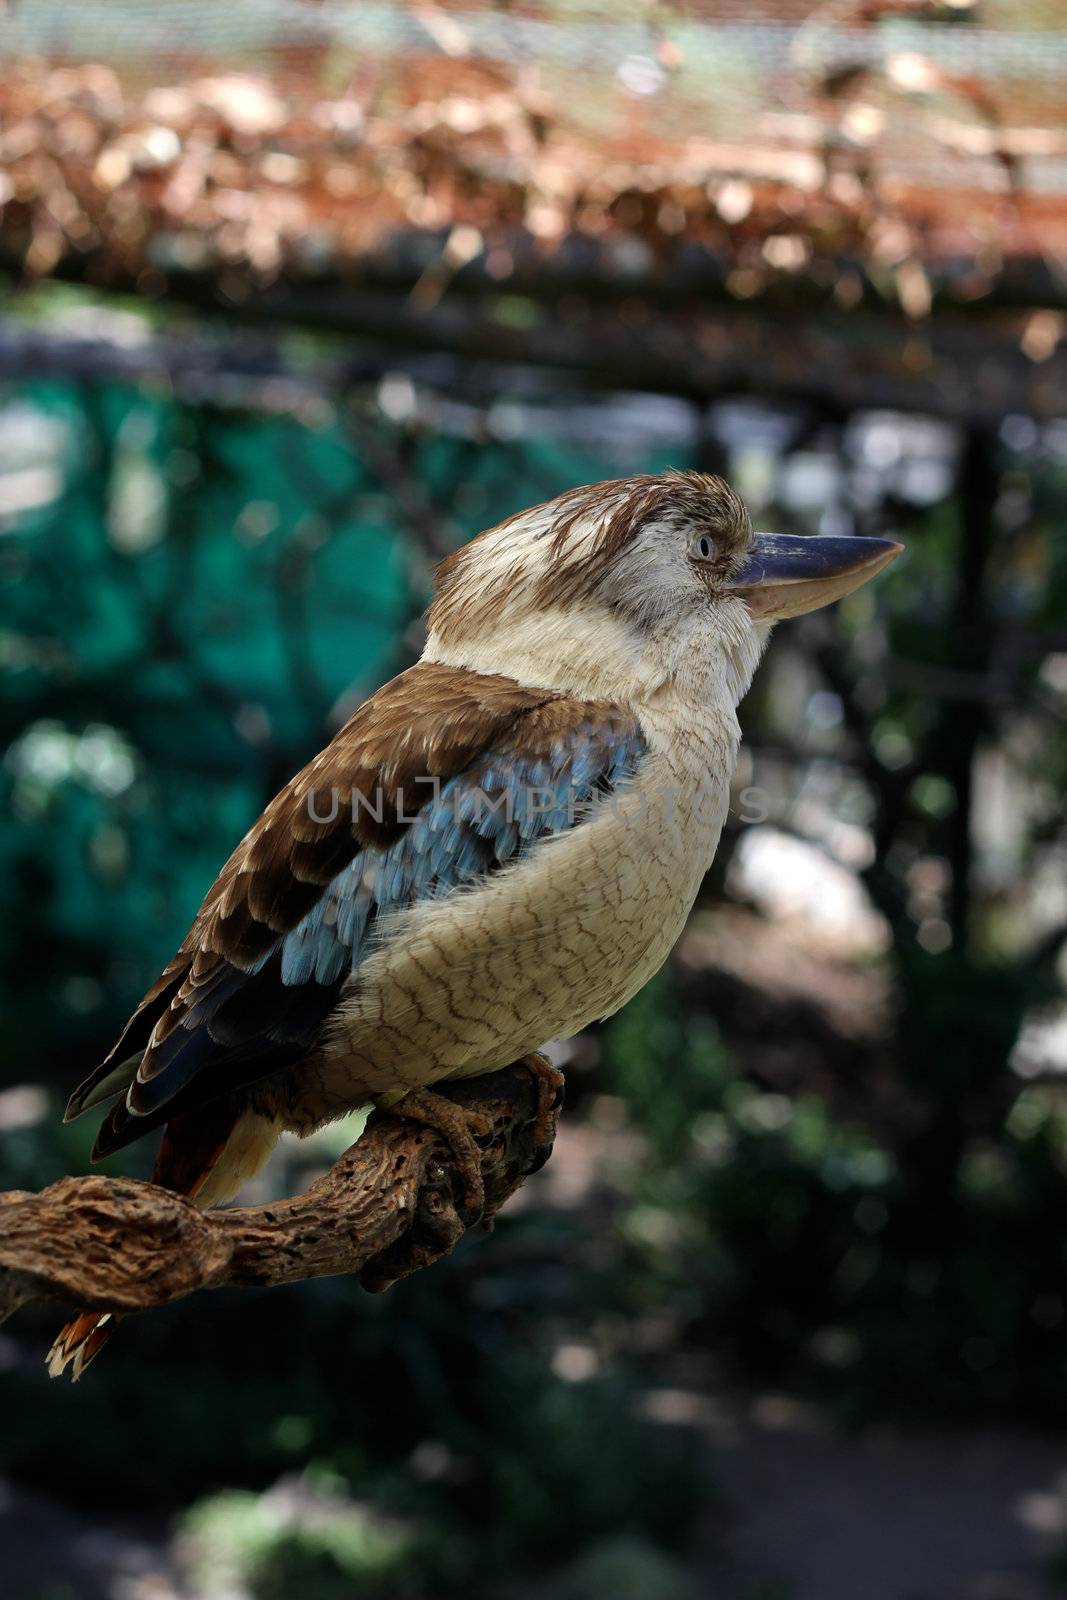 A Blue-Winged Kookaburra on a Branch by dwaschnig_photo